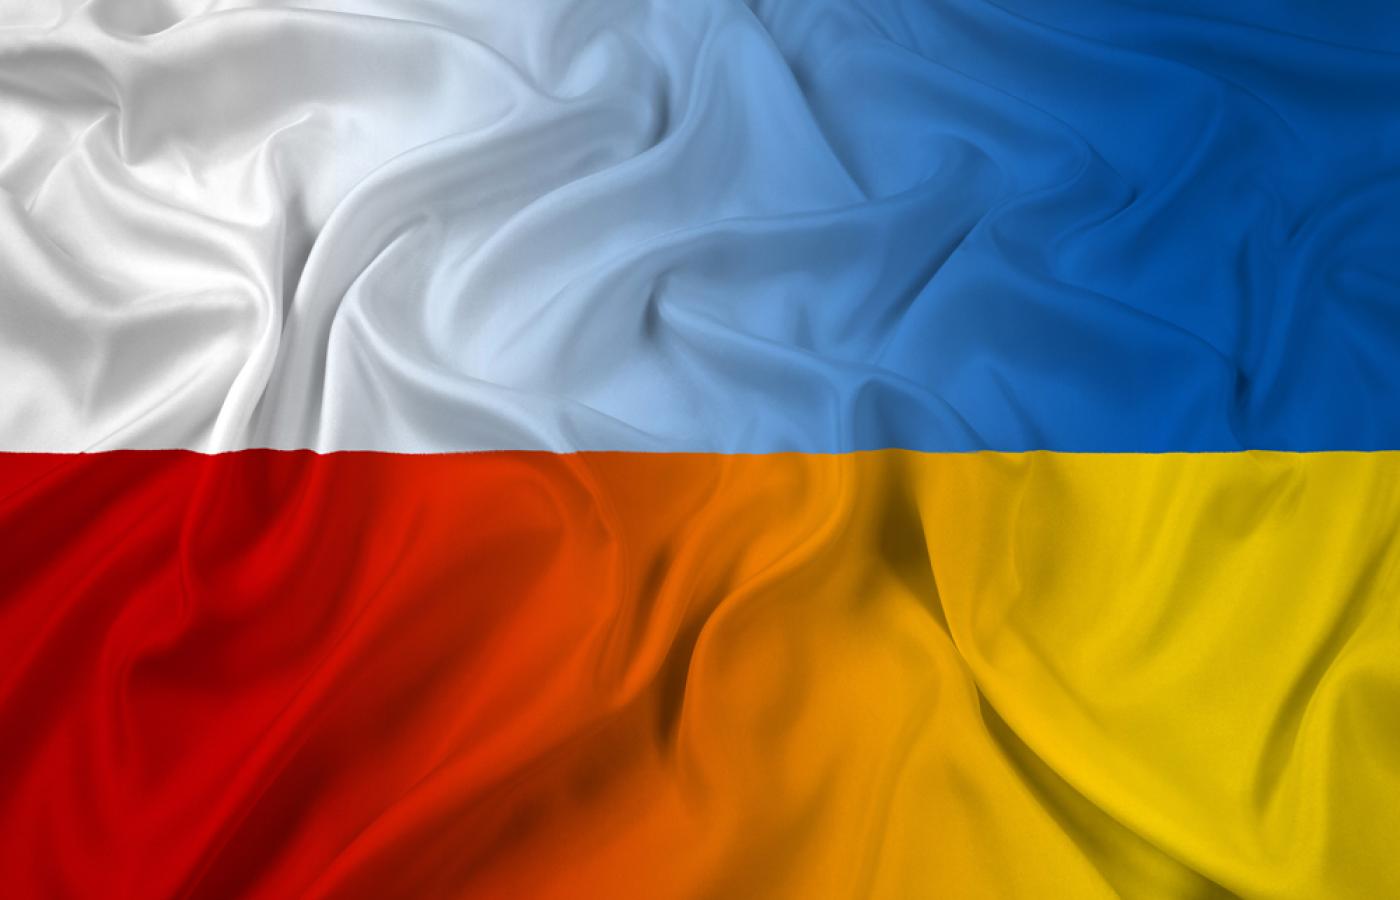 Po 1989 r. akcja „Wisła” stała się jednym z kluczowym wydarzeń historycznych, wokół którego budowano mozolnie dialog polsko-ukraiński.